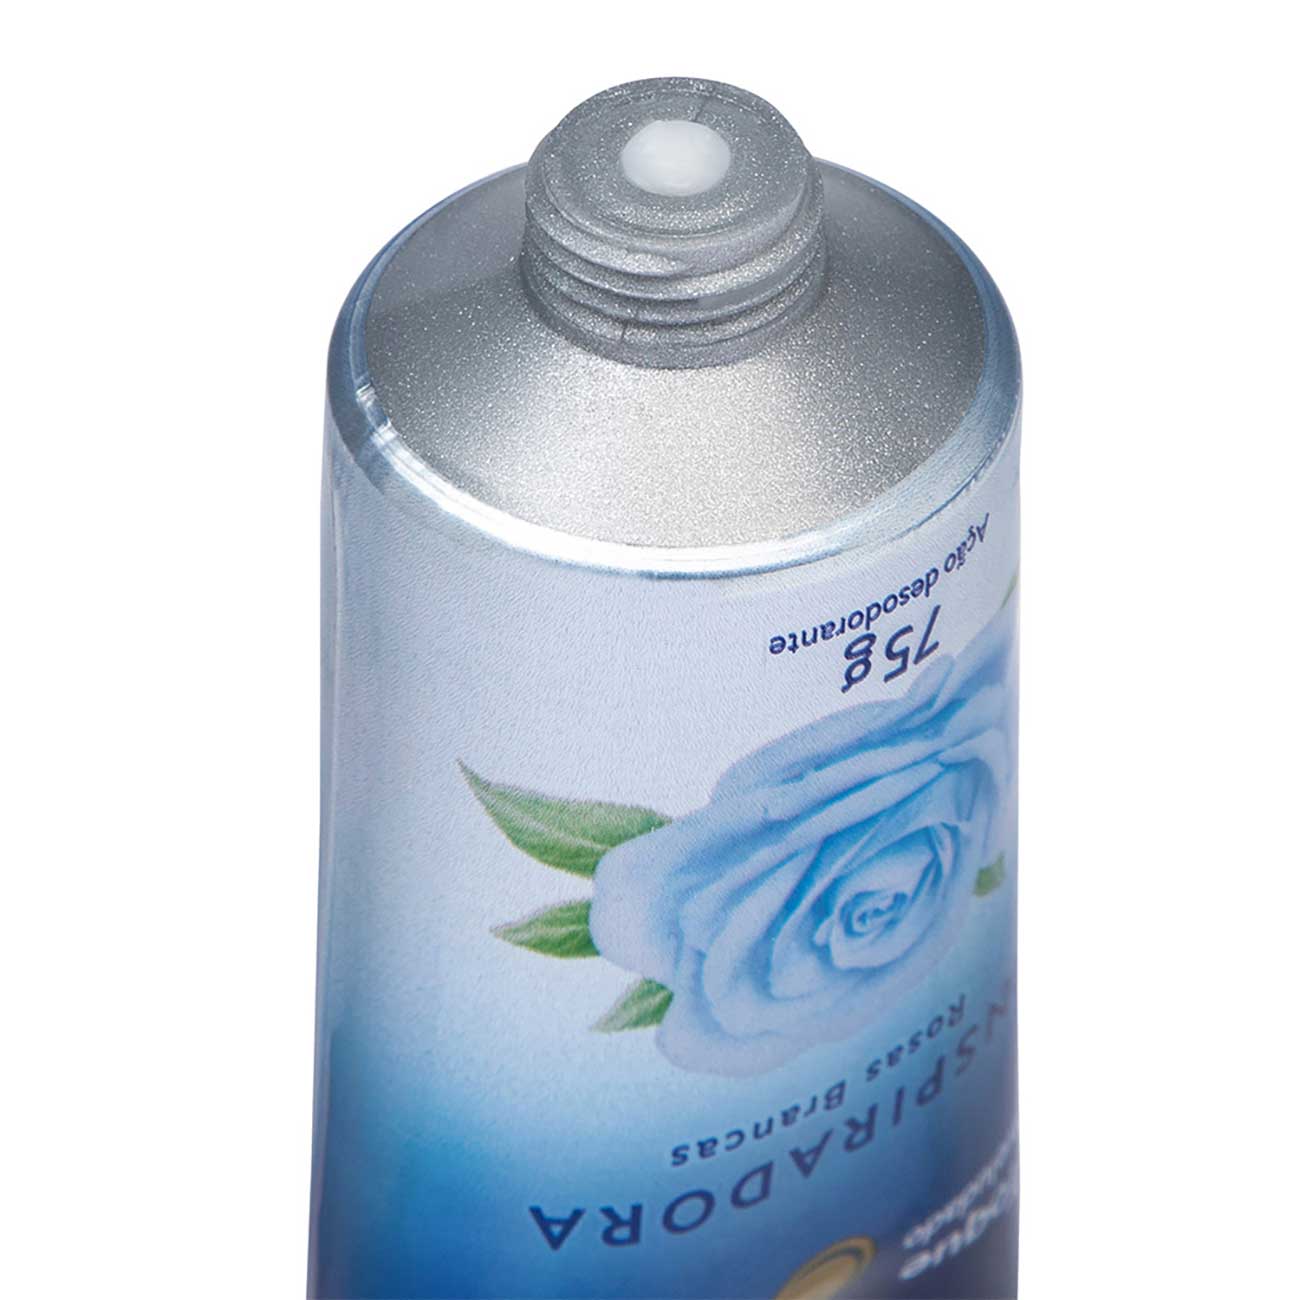 Loo hidratante de mos Inspiradora Rosas Brancas 75g com ao desodorante